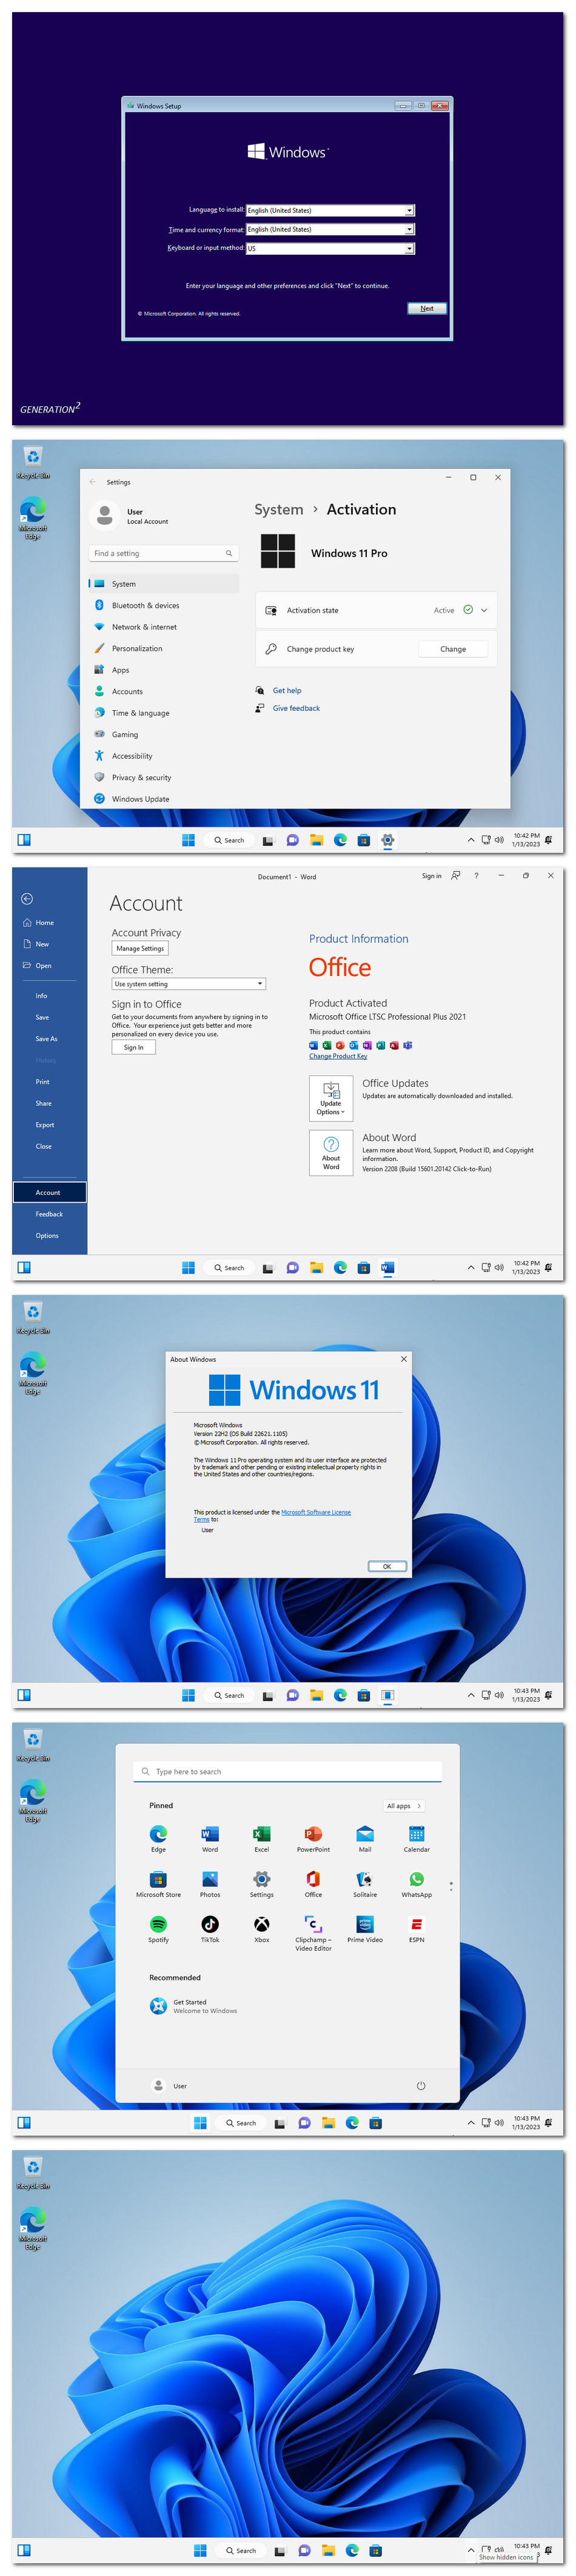 Windows 11 X64 22H2 Pro incl Office 2021 en-US JAN 2023 {Gen2}